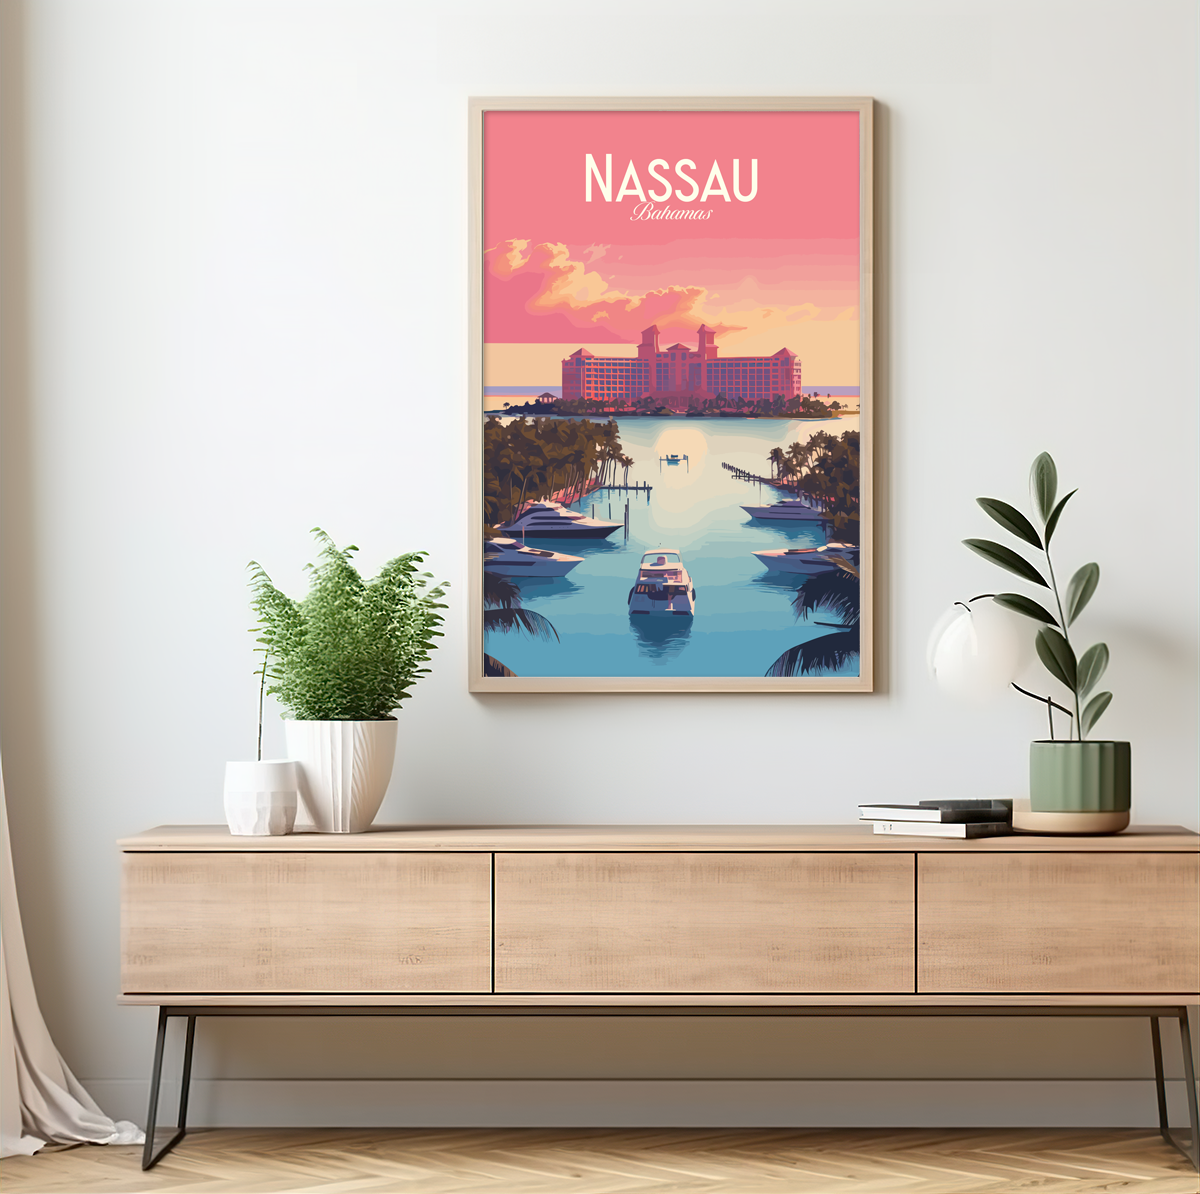 Nassau poster by bon voyage design